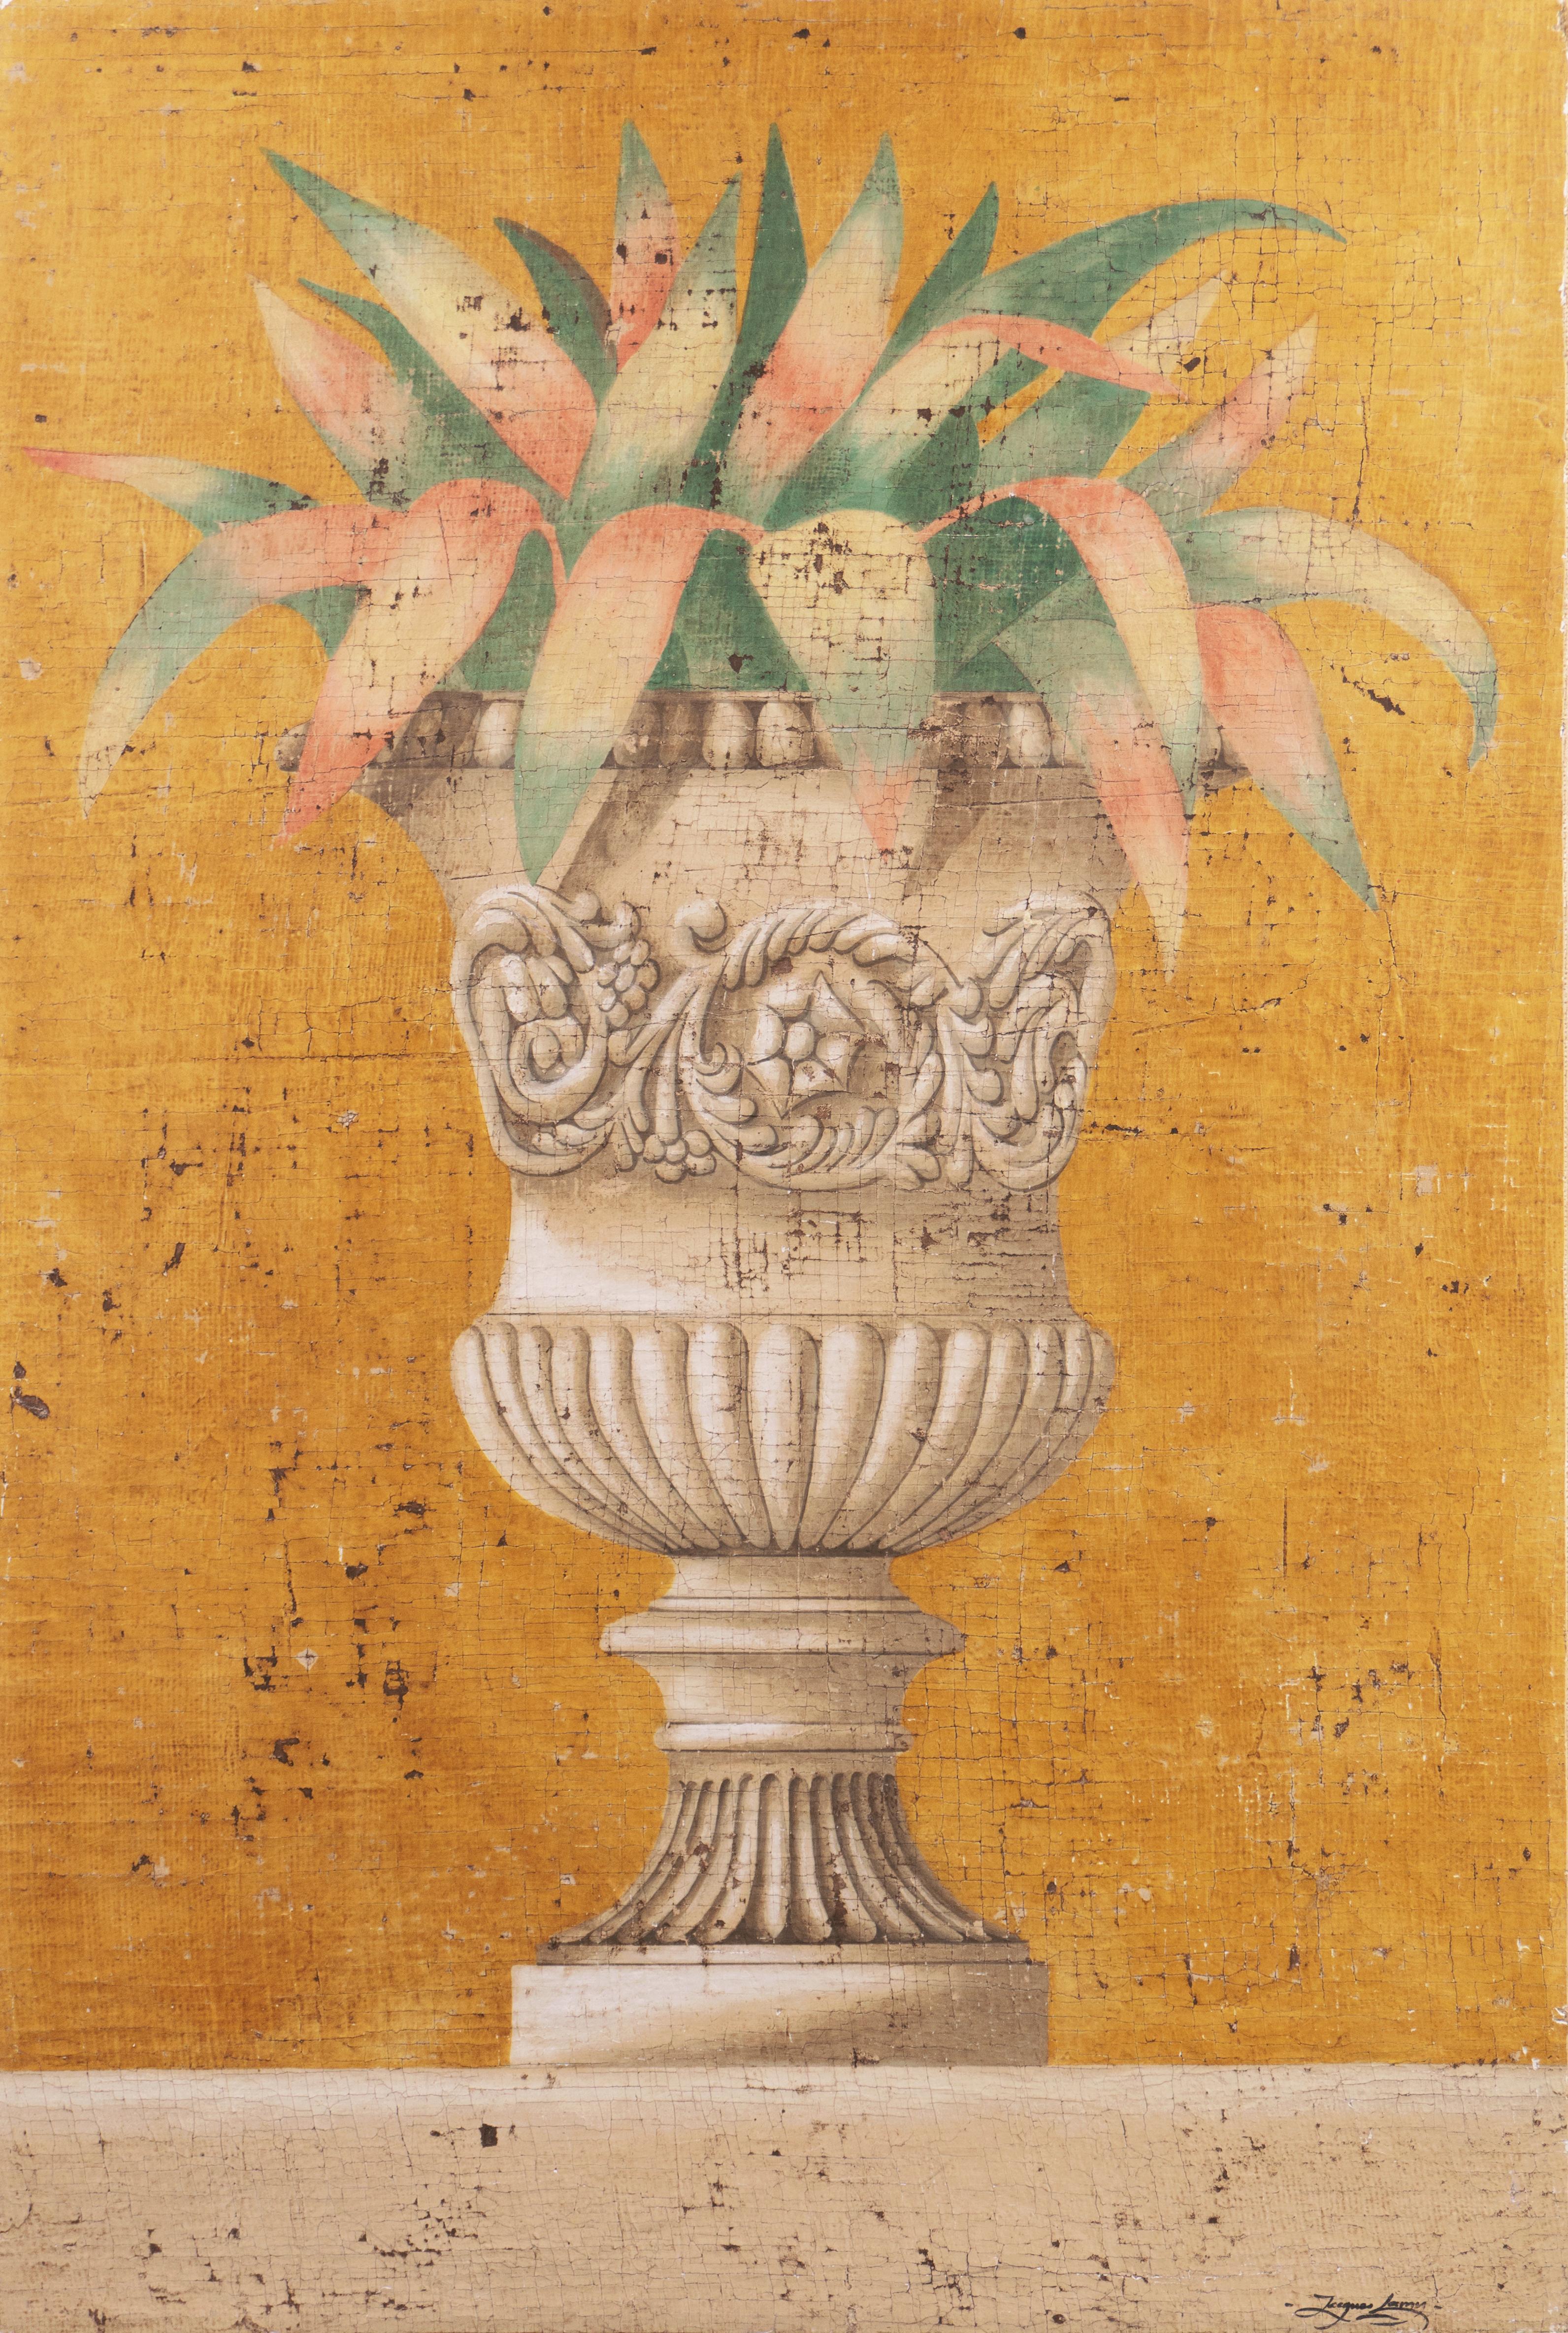 Jacques Lamy Still-Life Painting - 'Grecian Urn', Prix de Rome, École Nationale Supérieure des Arts Décoratifs